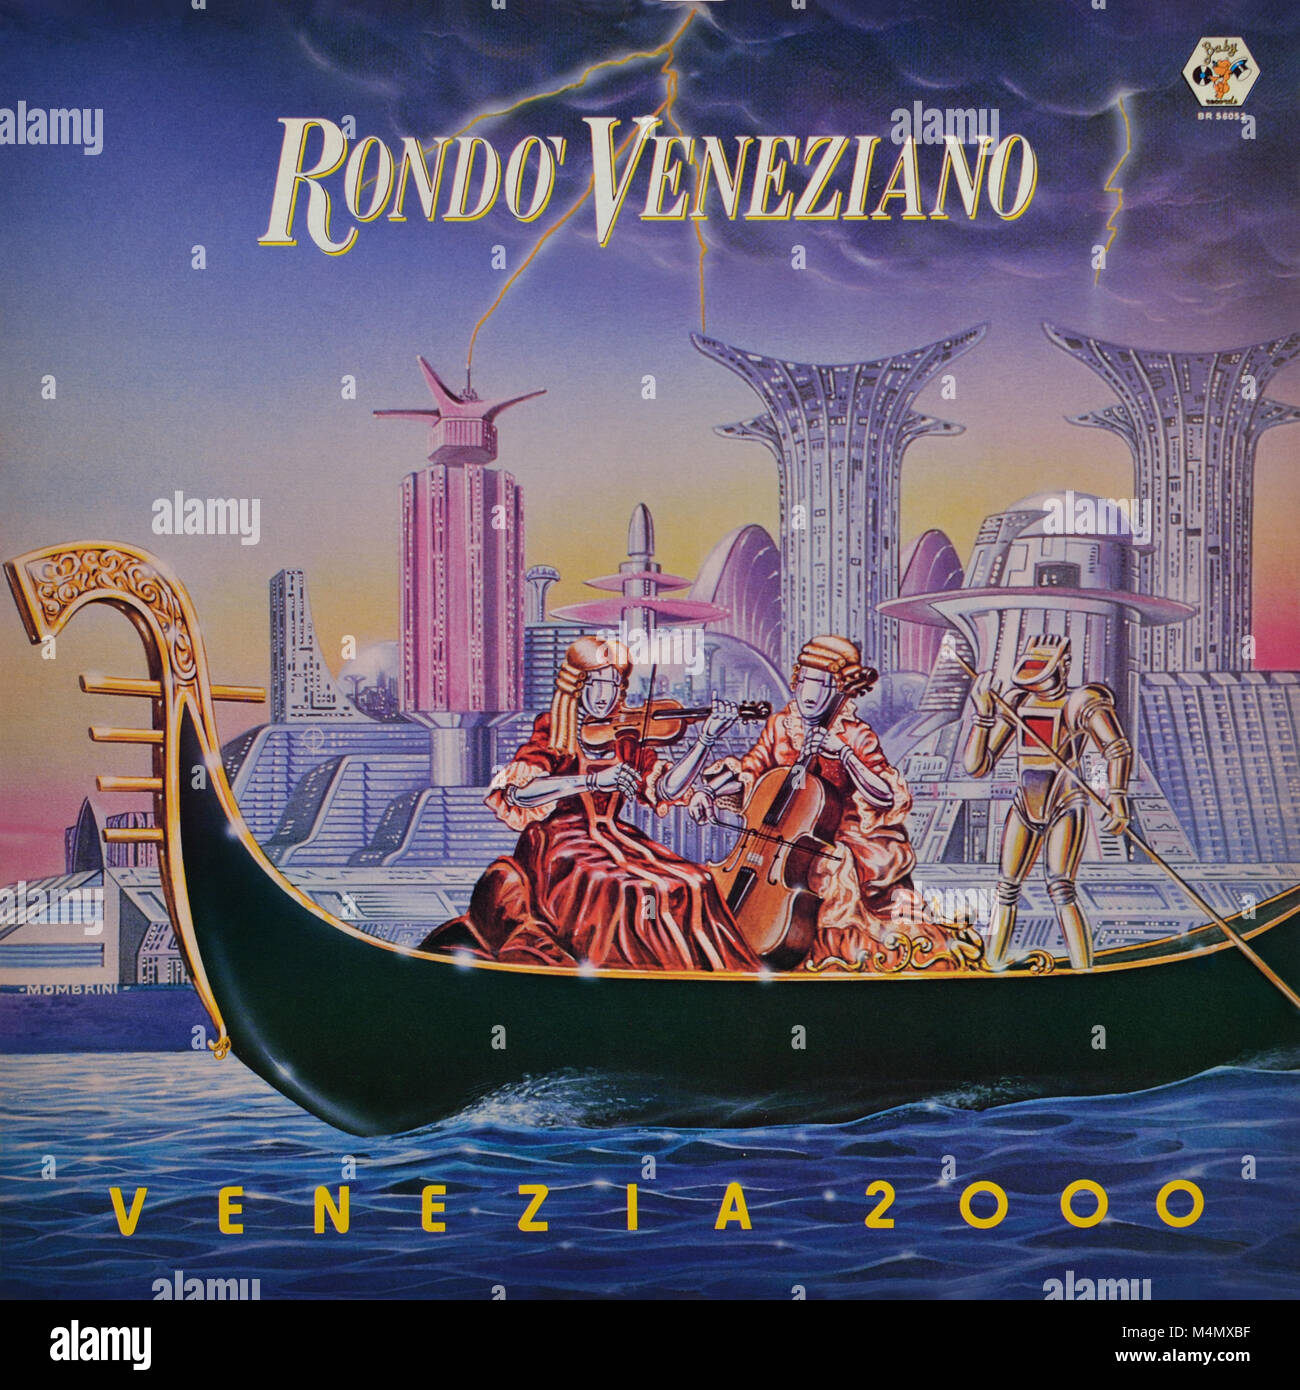 Rondò Veneziano - couverture originale de l'album de vinyle - Venezia 2000 - 1983 Banque D'Images